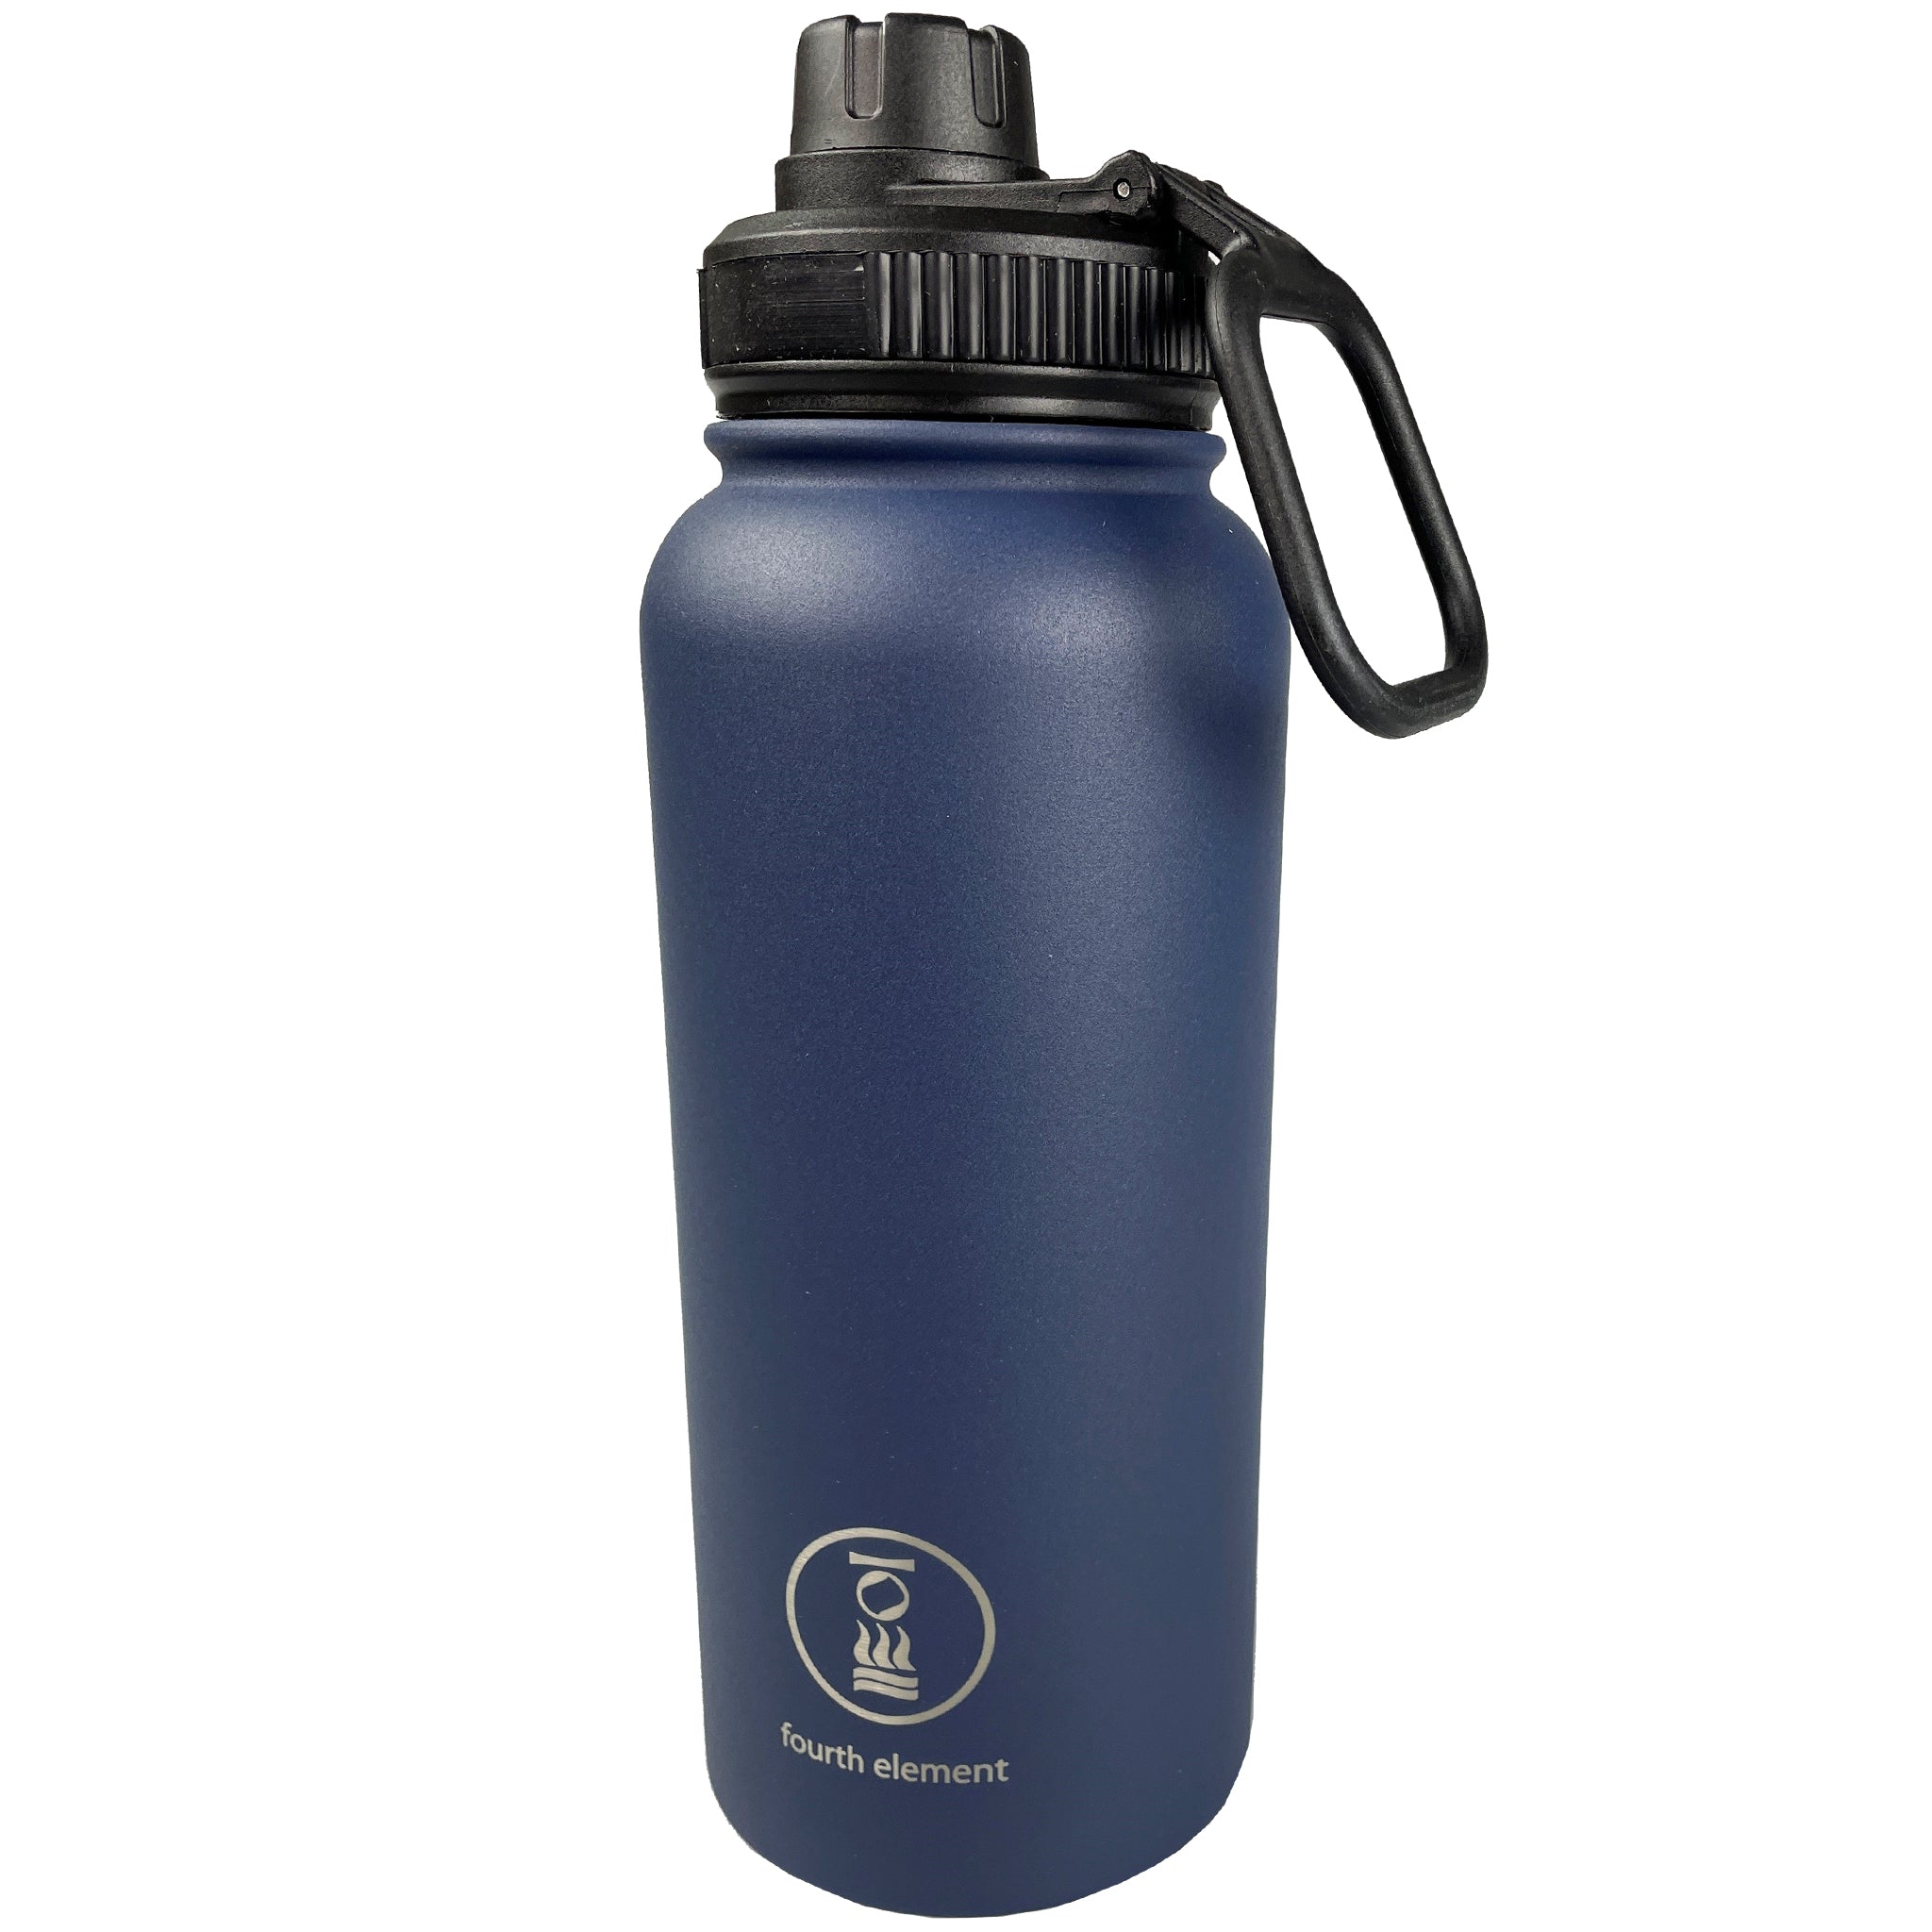 Fourth Element Gulper Water Bottle